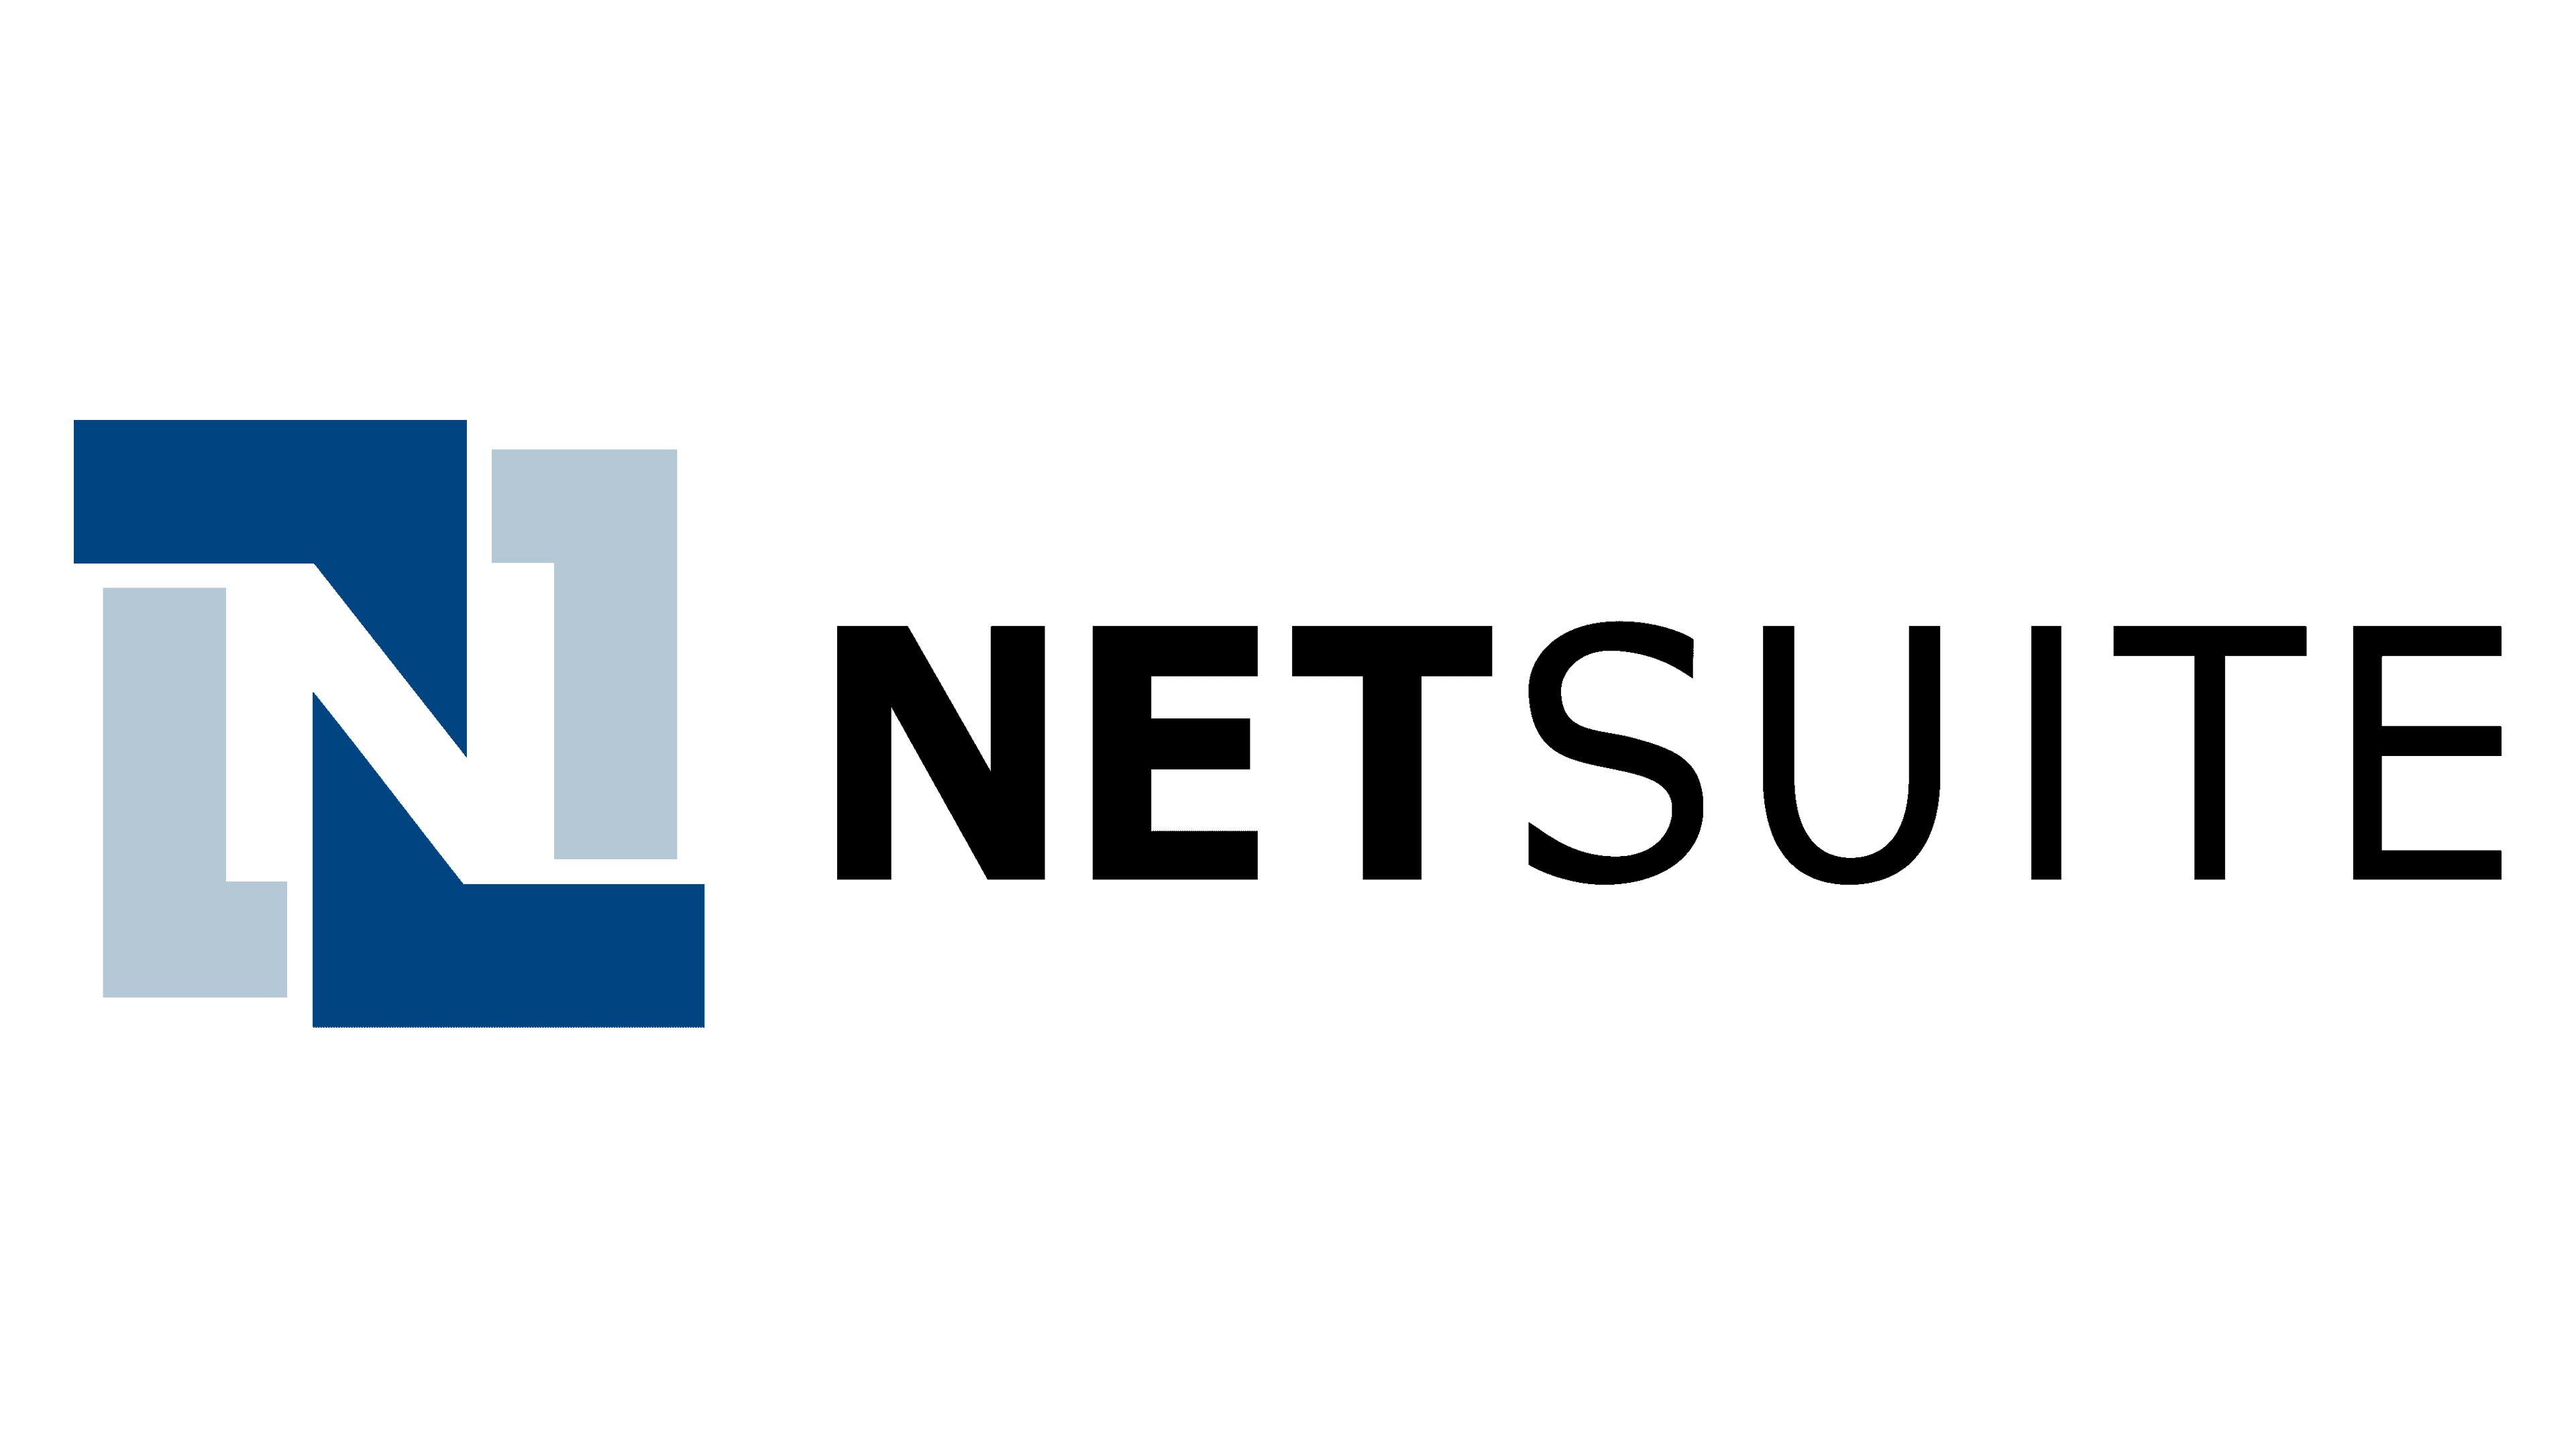 Net Suite logo